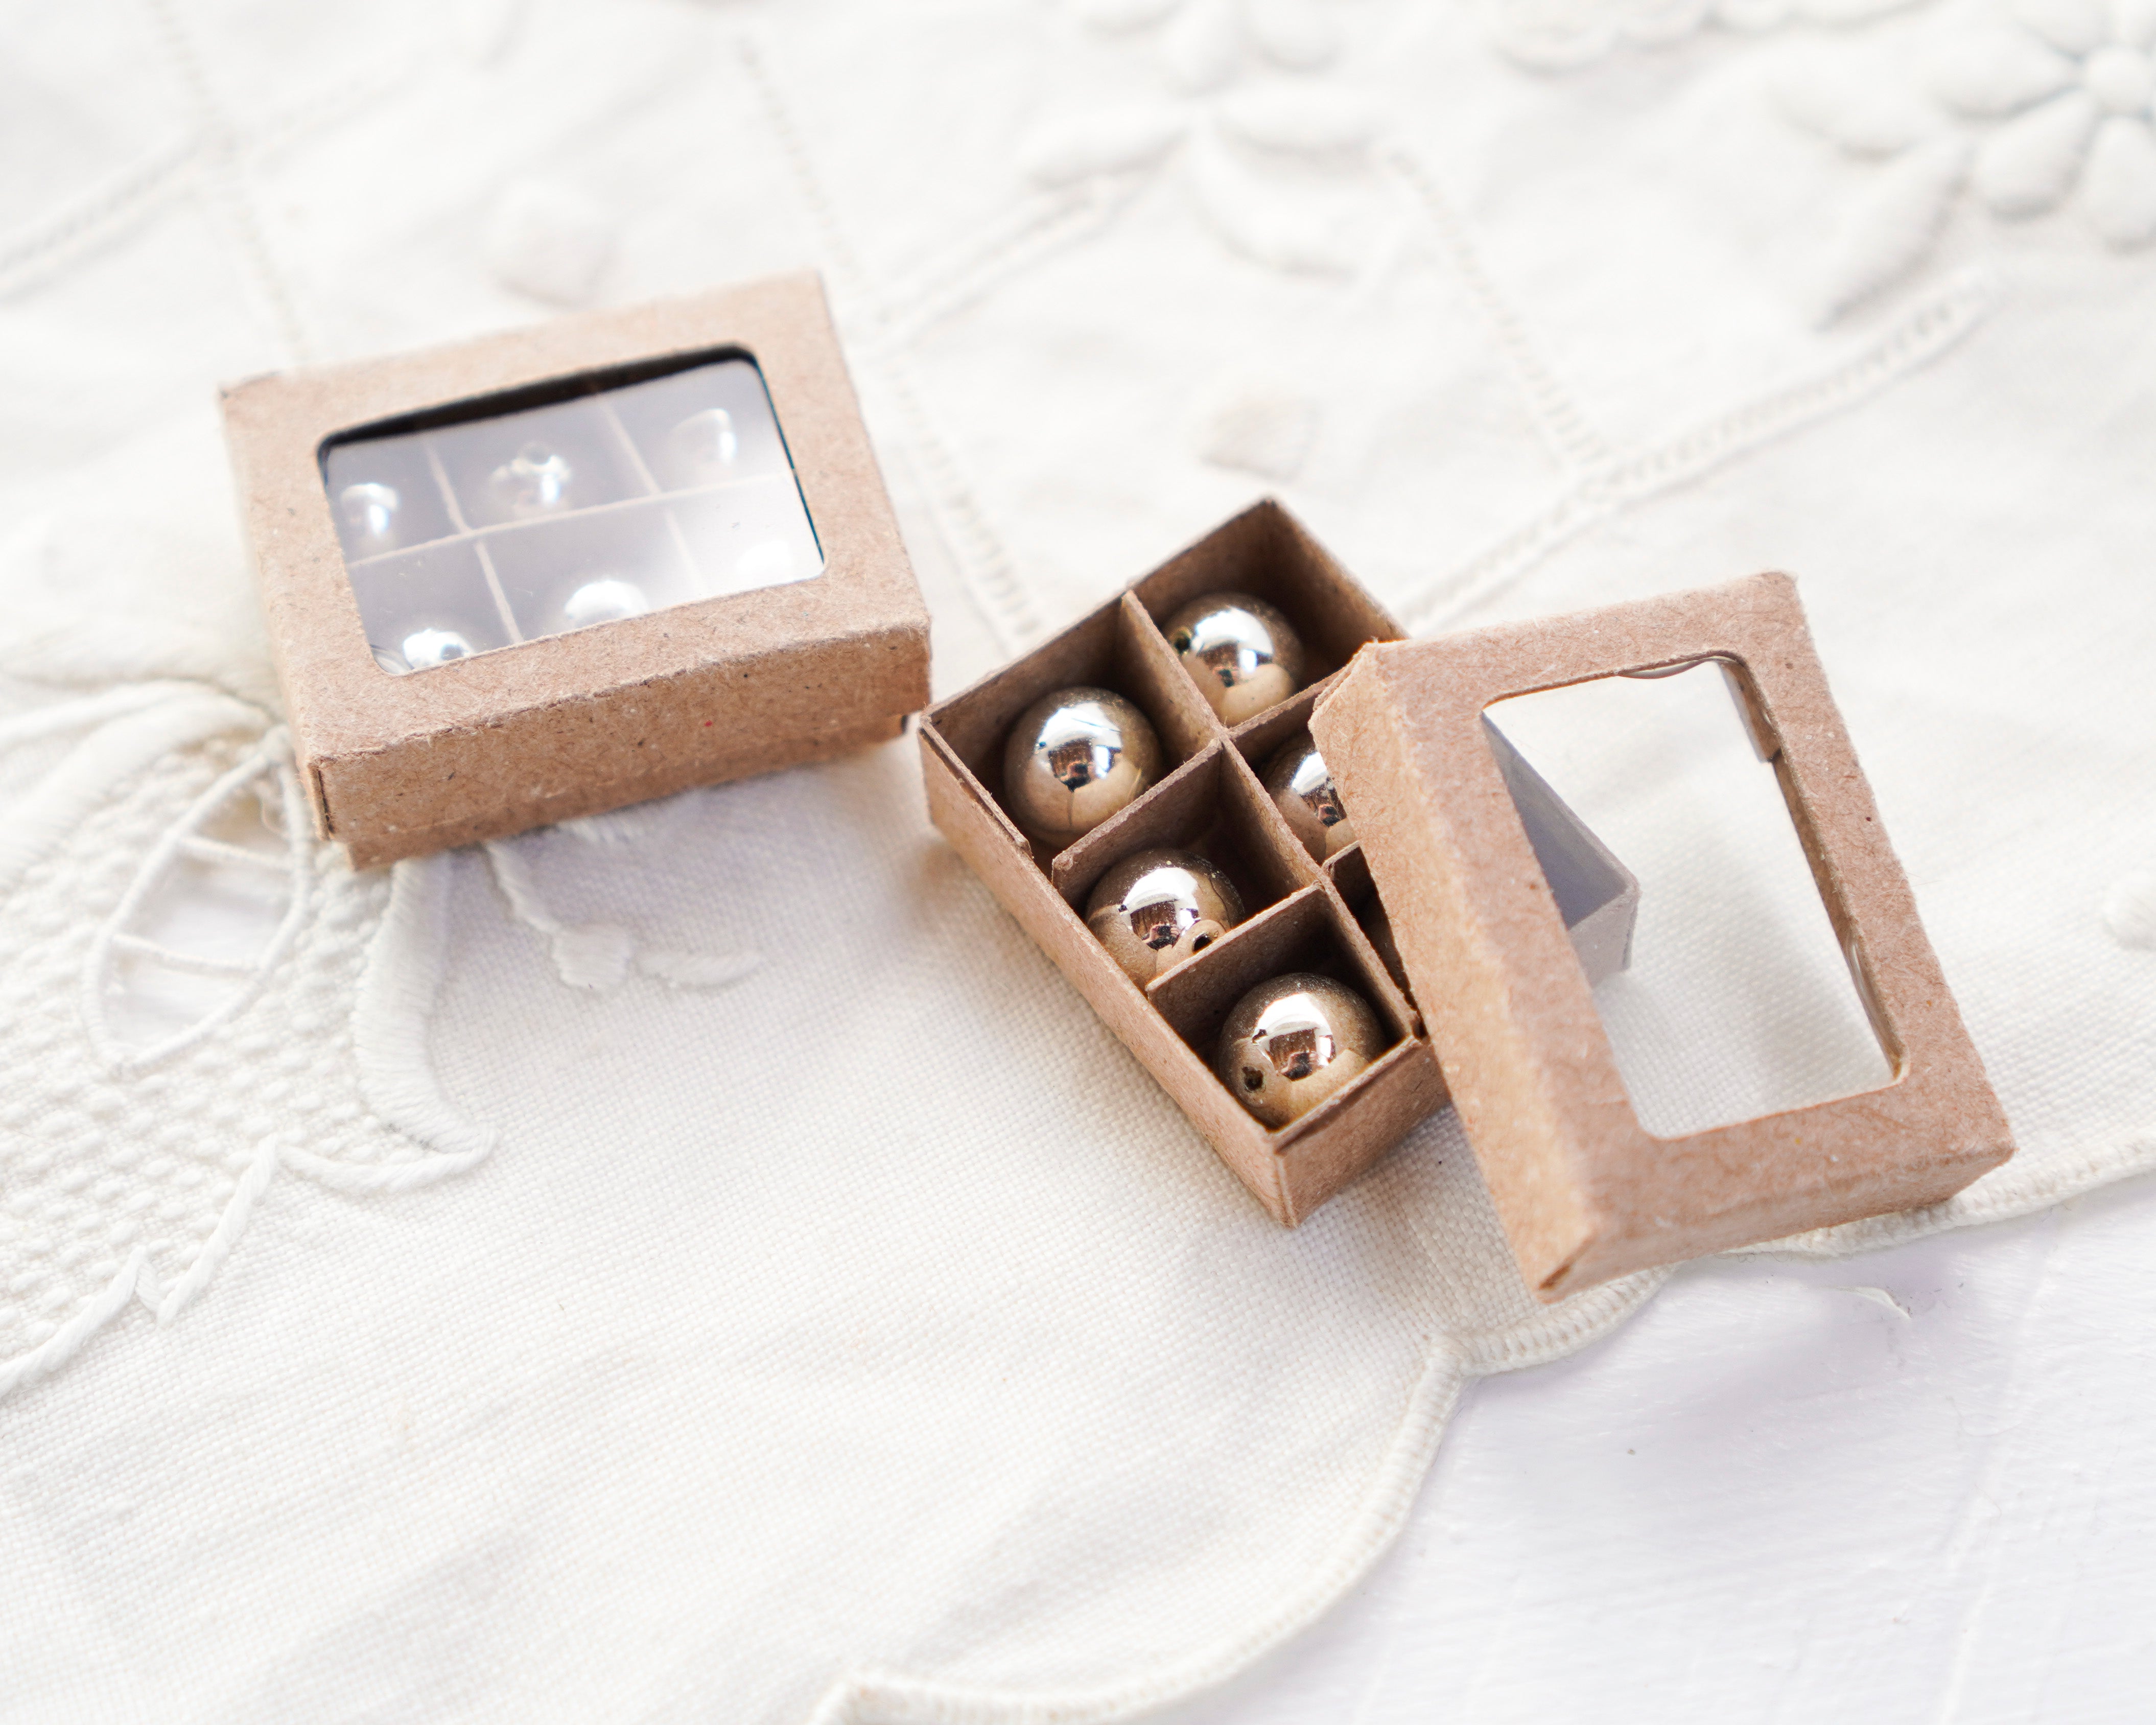 Dollhouse miniature jewelry, 1:12 scale